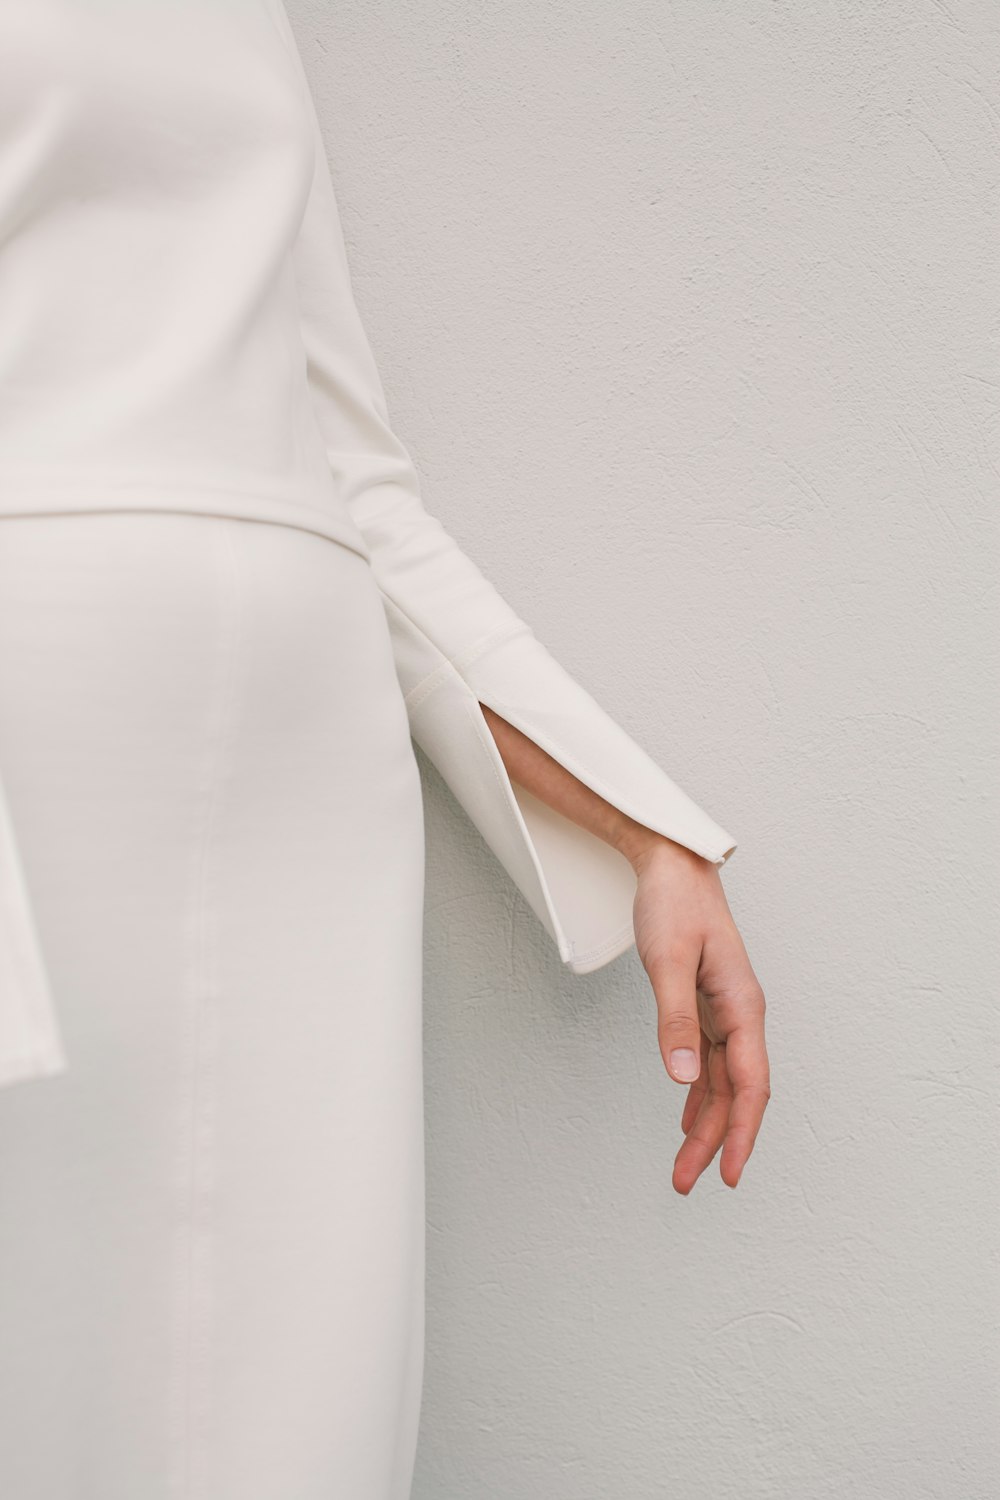 Una mujer con un vestido blanco está extendiendo su mano